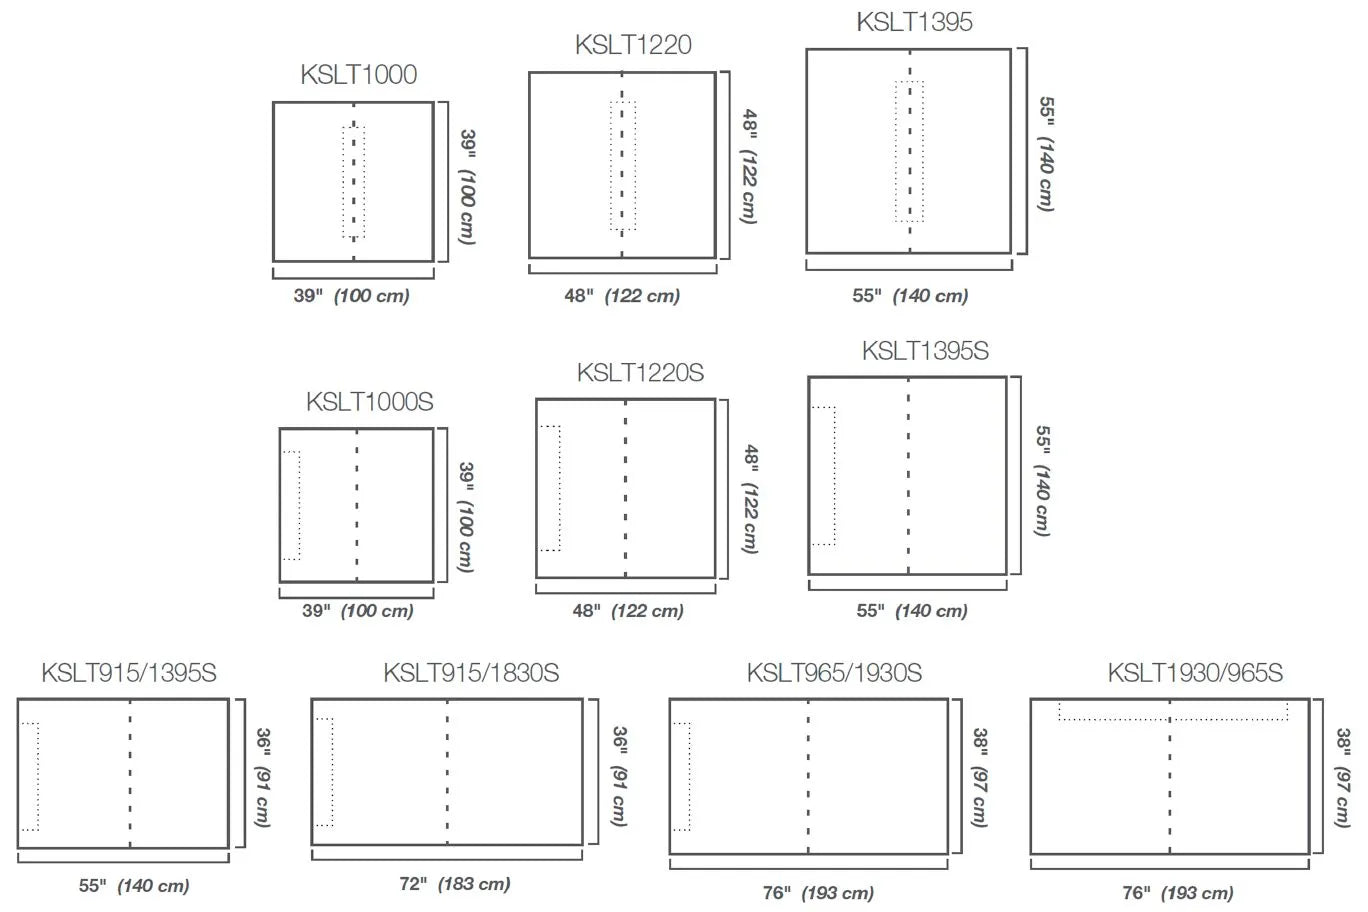 KSLT1000 - 1-1/4" x 39" x 39" - Schluter KERDI-SHOWER-LTS Base de douche préfabriquée en pente avec position de sortie centrée